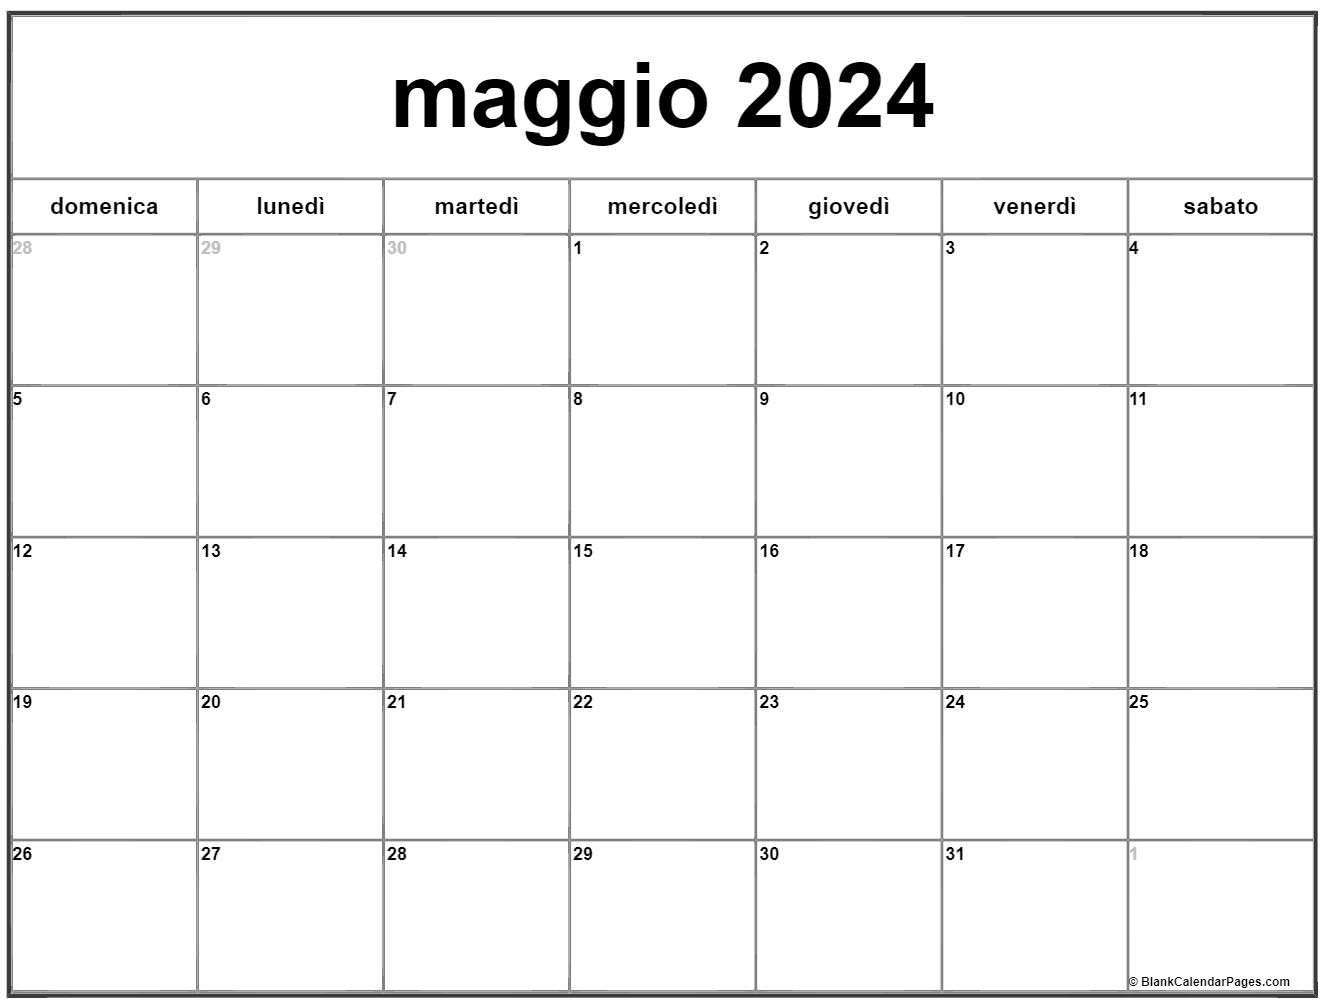 maggio 2024 calendario gratis italiano Calendario maggio